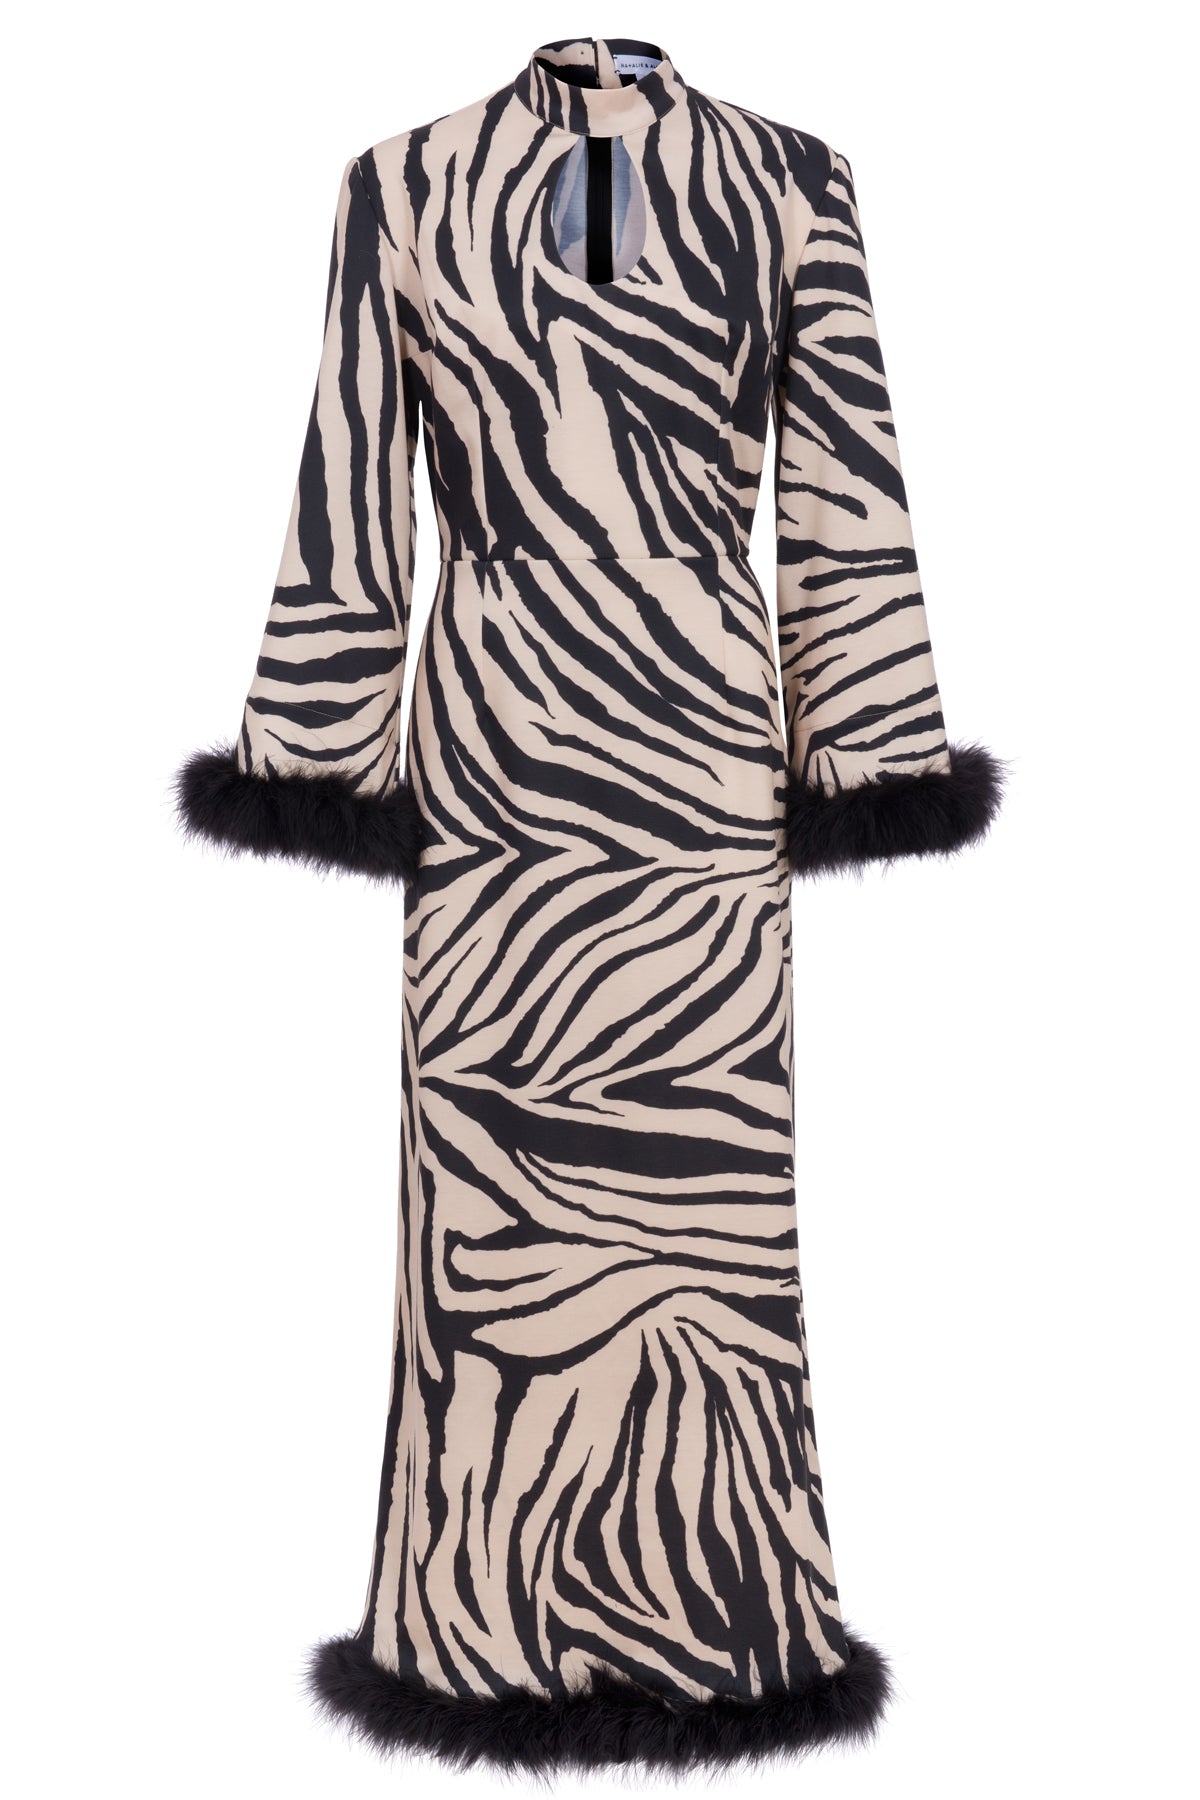 Liz Zebra Knit Maxi Dress with Marabou Trim-Made to Order